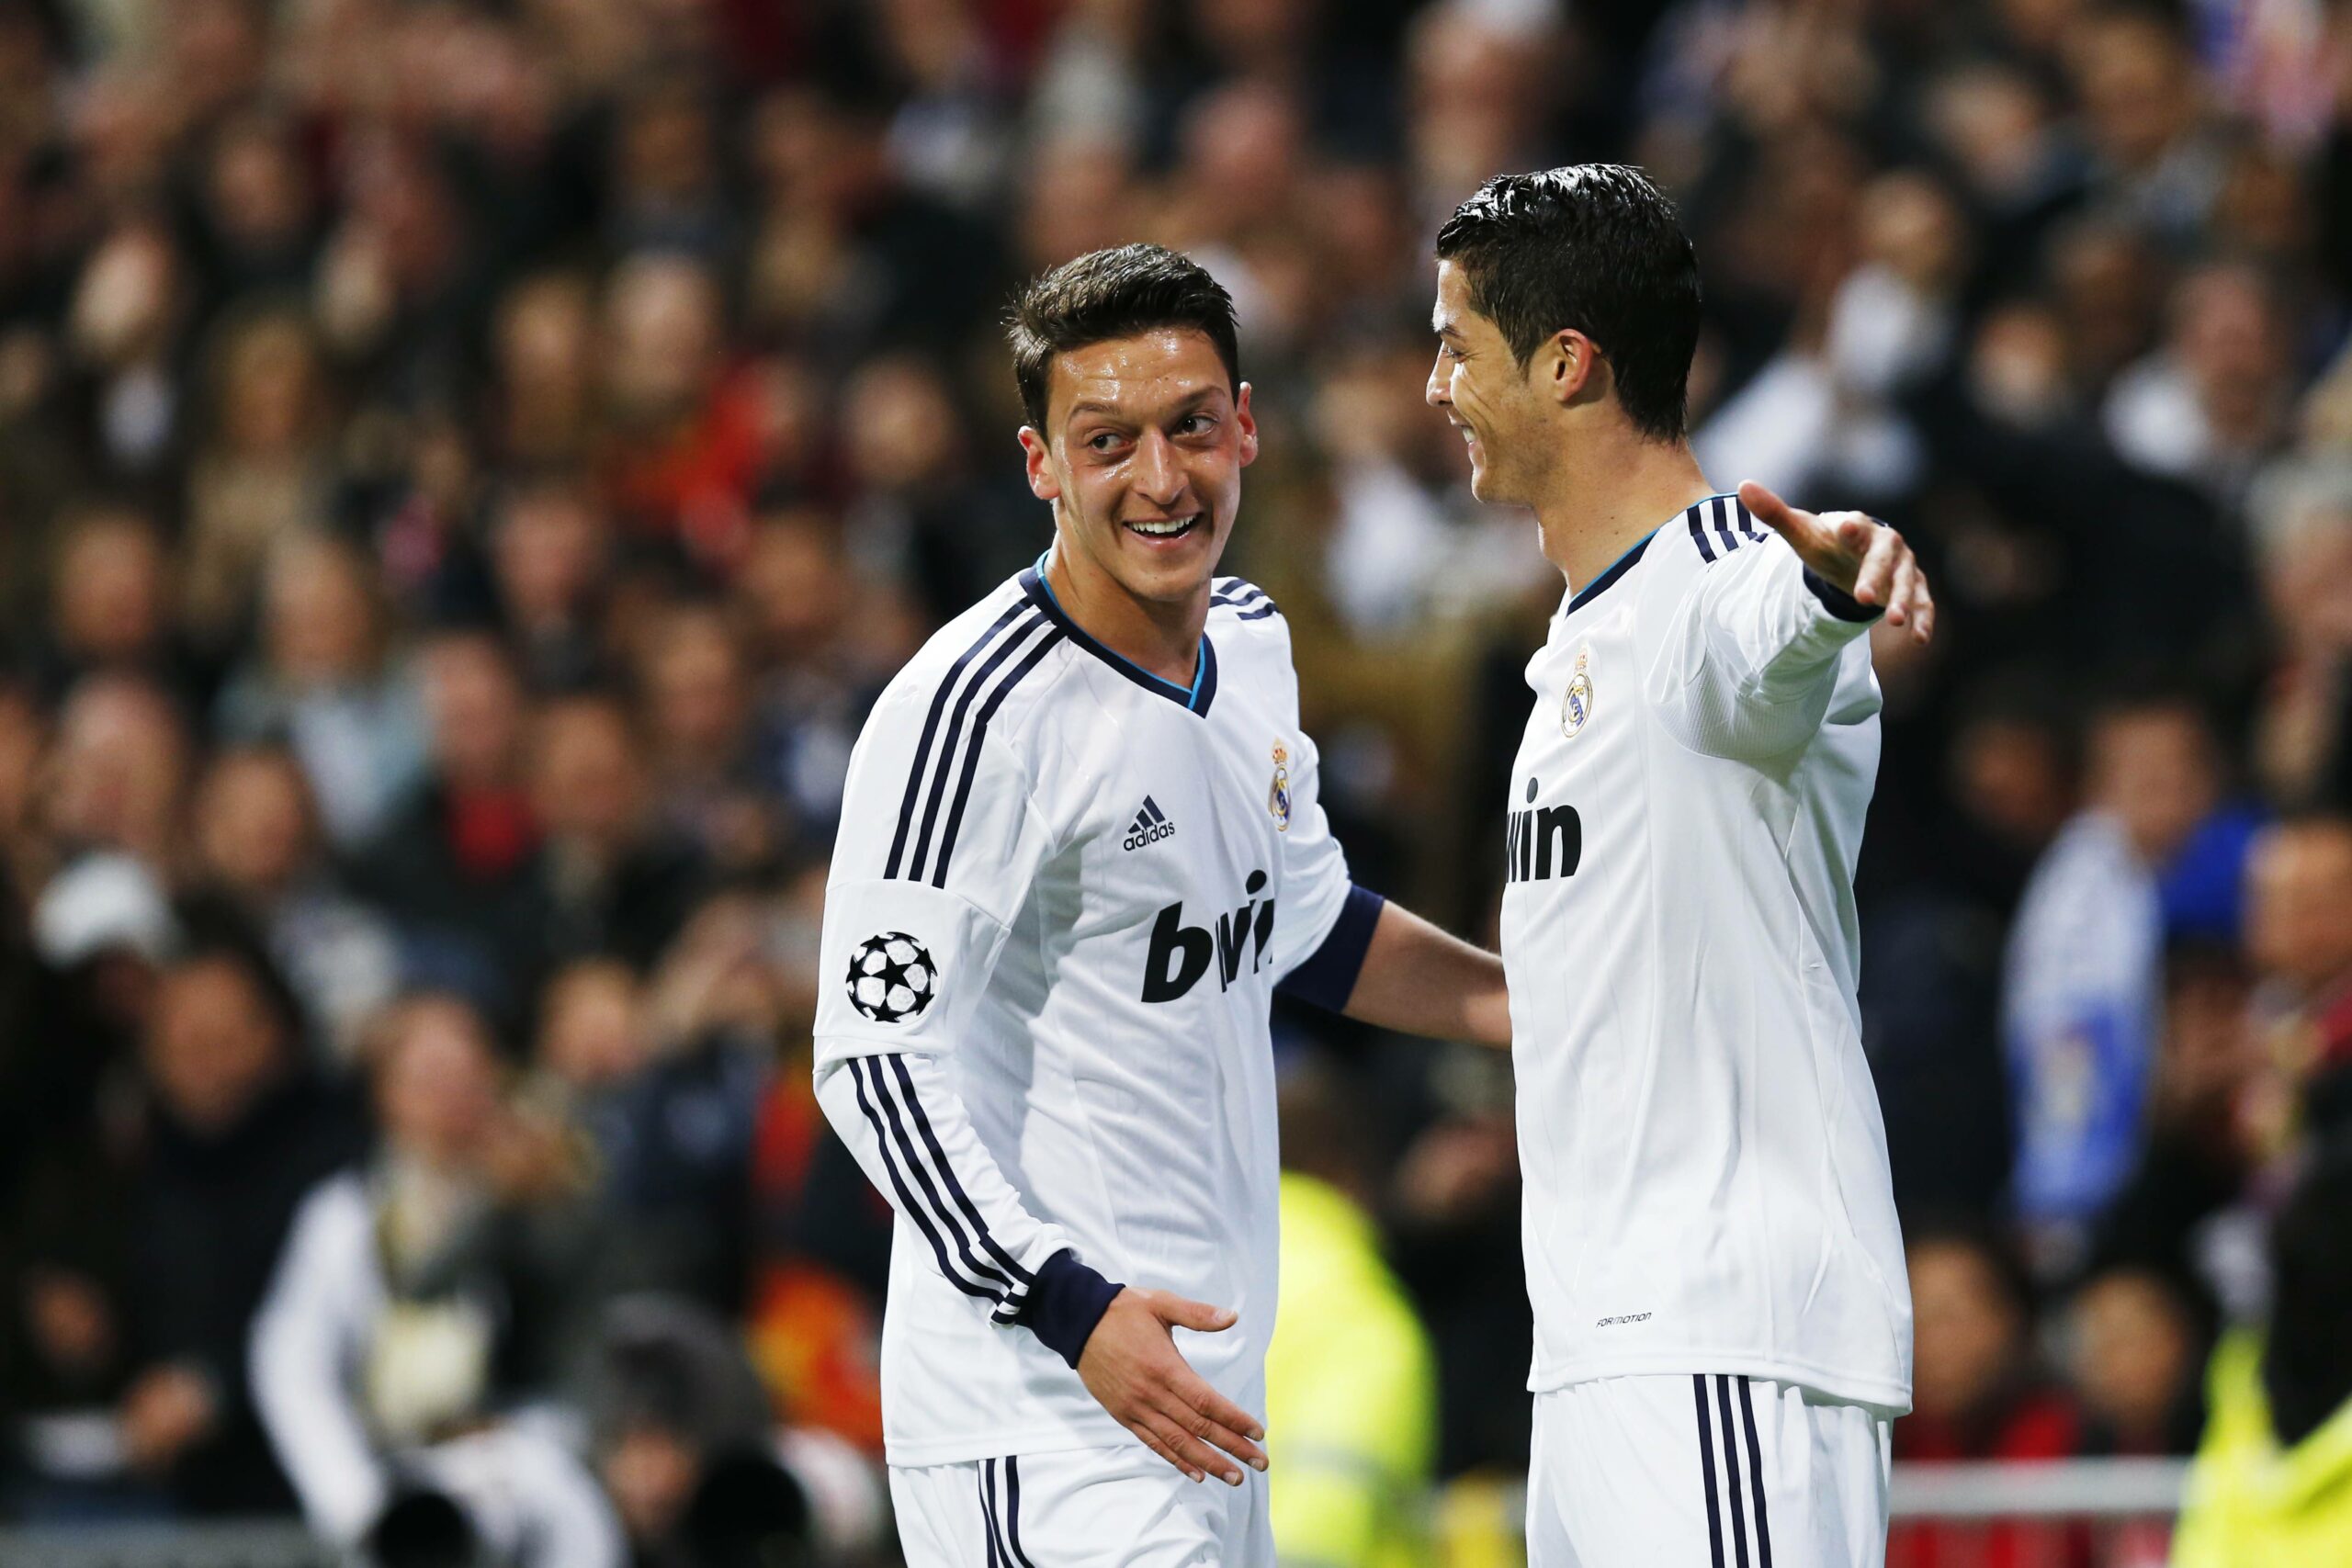 Mesut Özil und Cristiano Ronaldo spielten von 2010 bis 2013 gemeinsam für Real Madrid